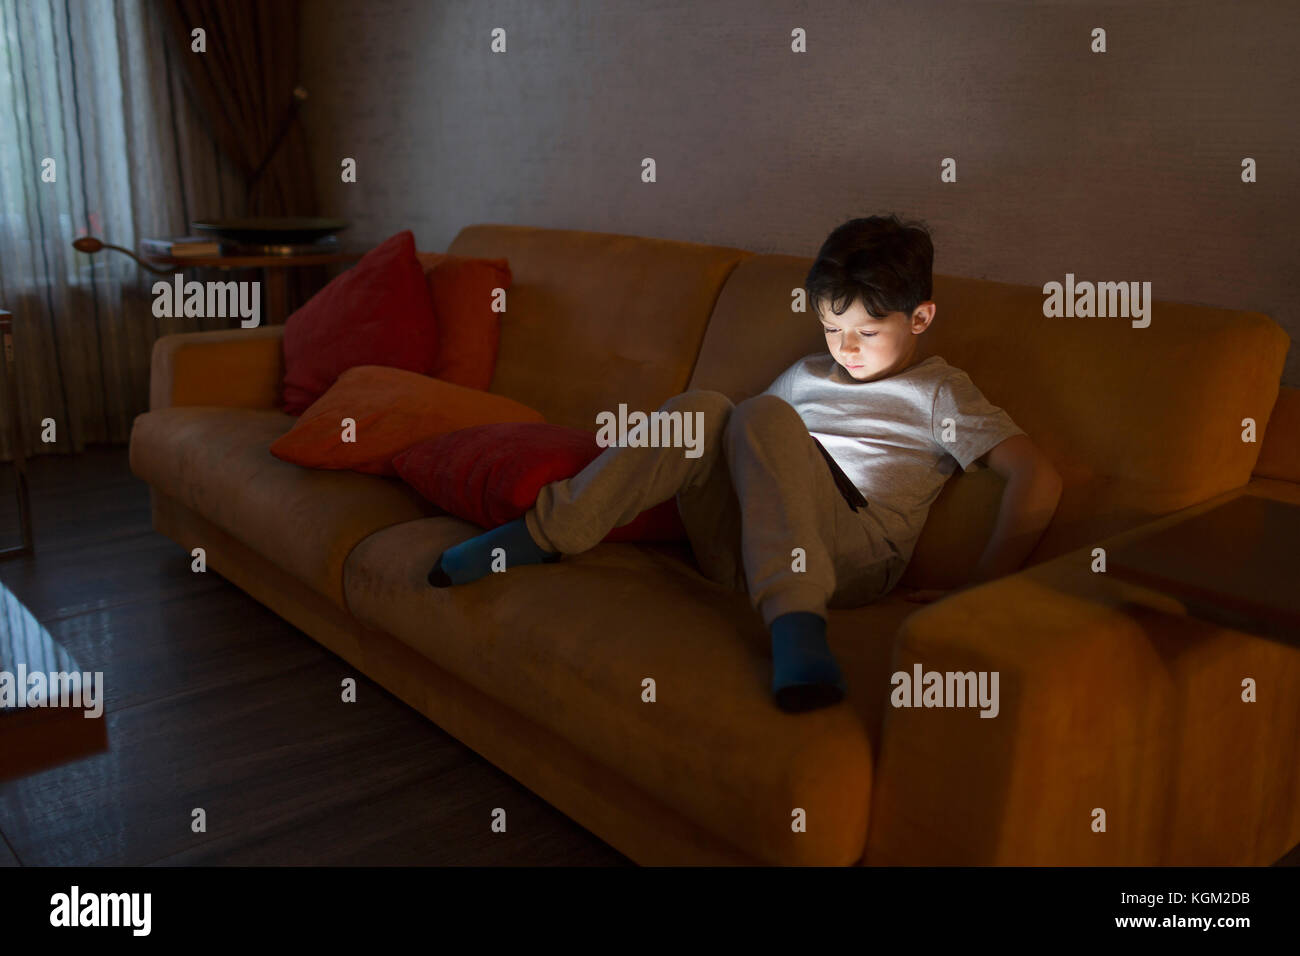 Toute la longueur de boy using digital tablet while sitting on sofa at home Banque D'Images